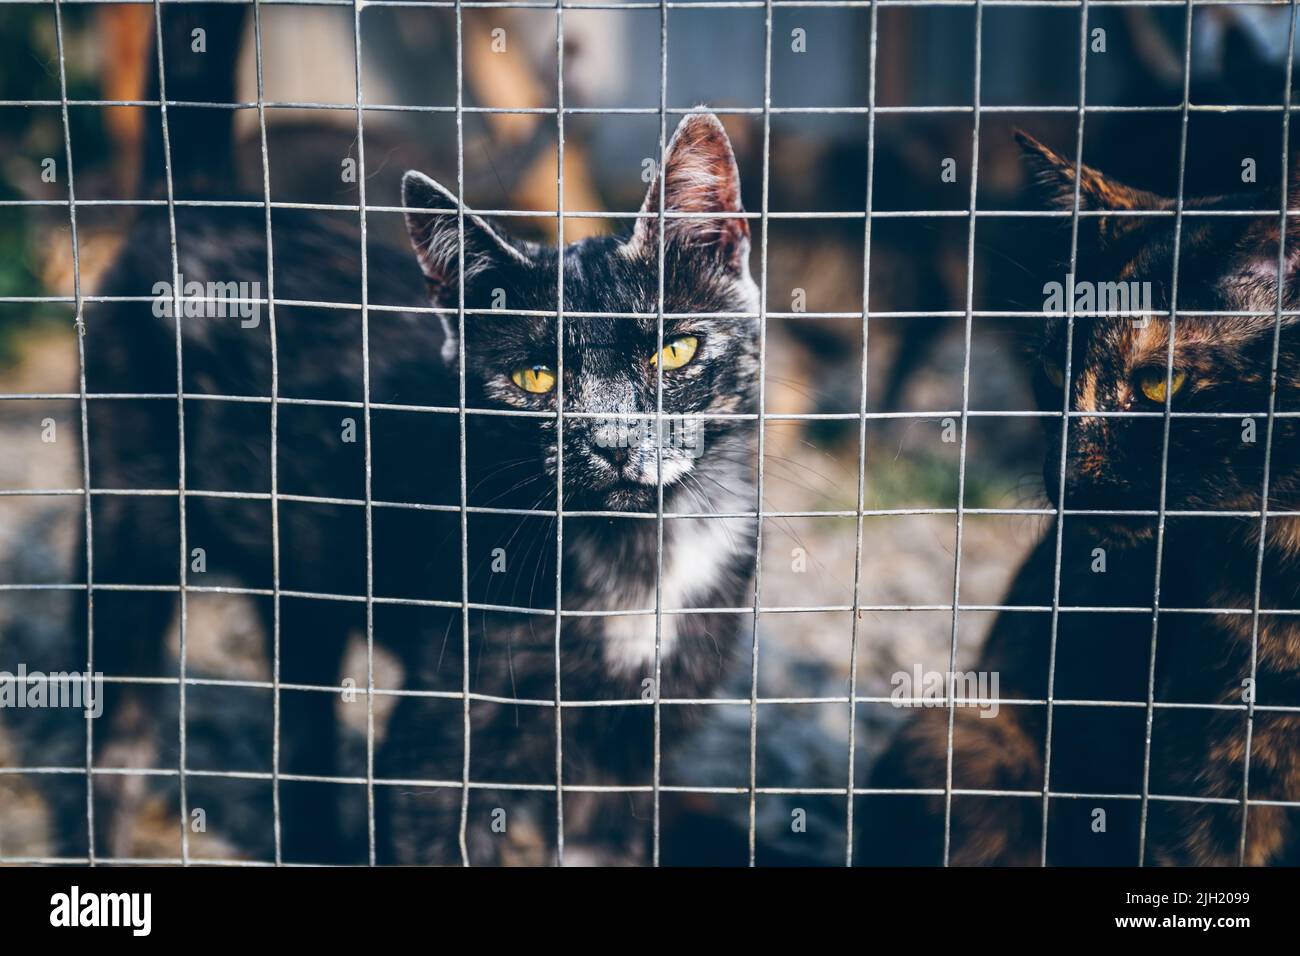 Die Katze im Käfig wurde von Freiwilligen gerettet. Viele Tiere wurden aufgrund der russischen Aggression in der Ukraine ohne Heimat zurückgelassen. Freiwillige helfen Haustieren. Stockfoto